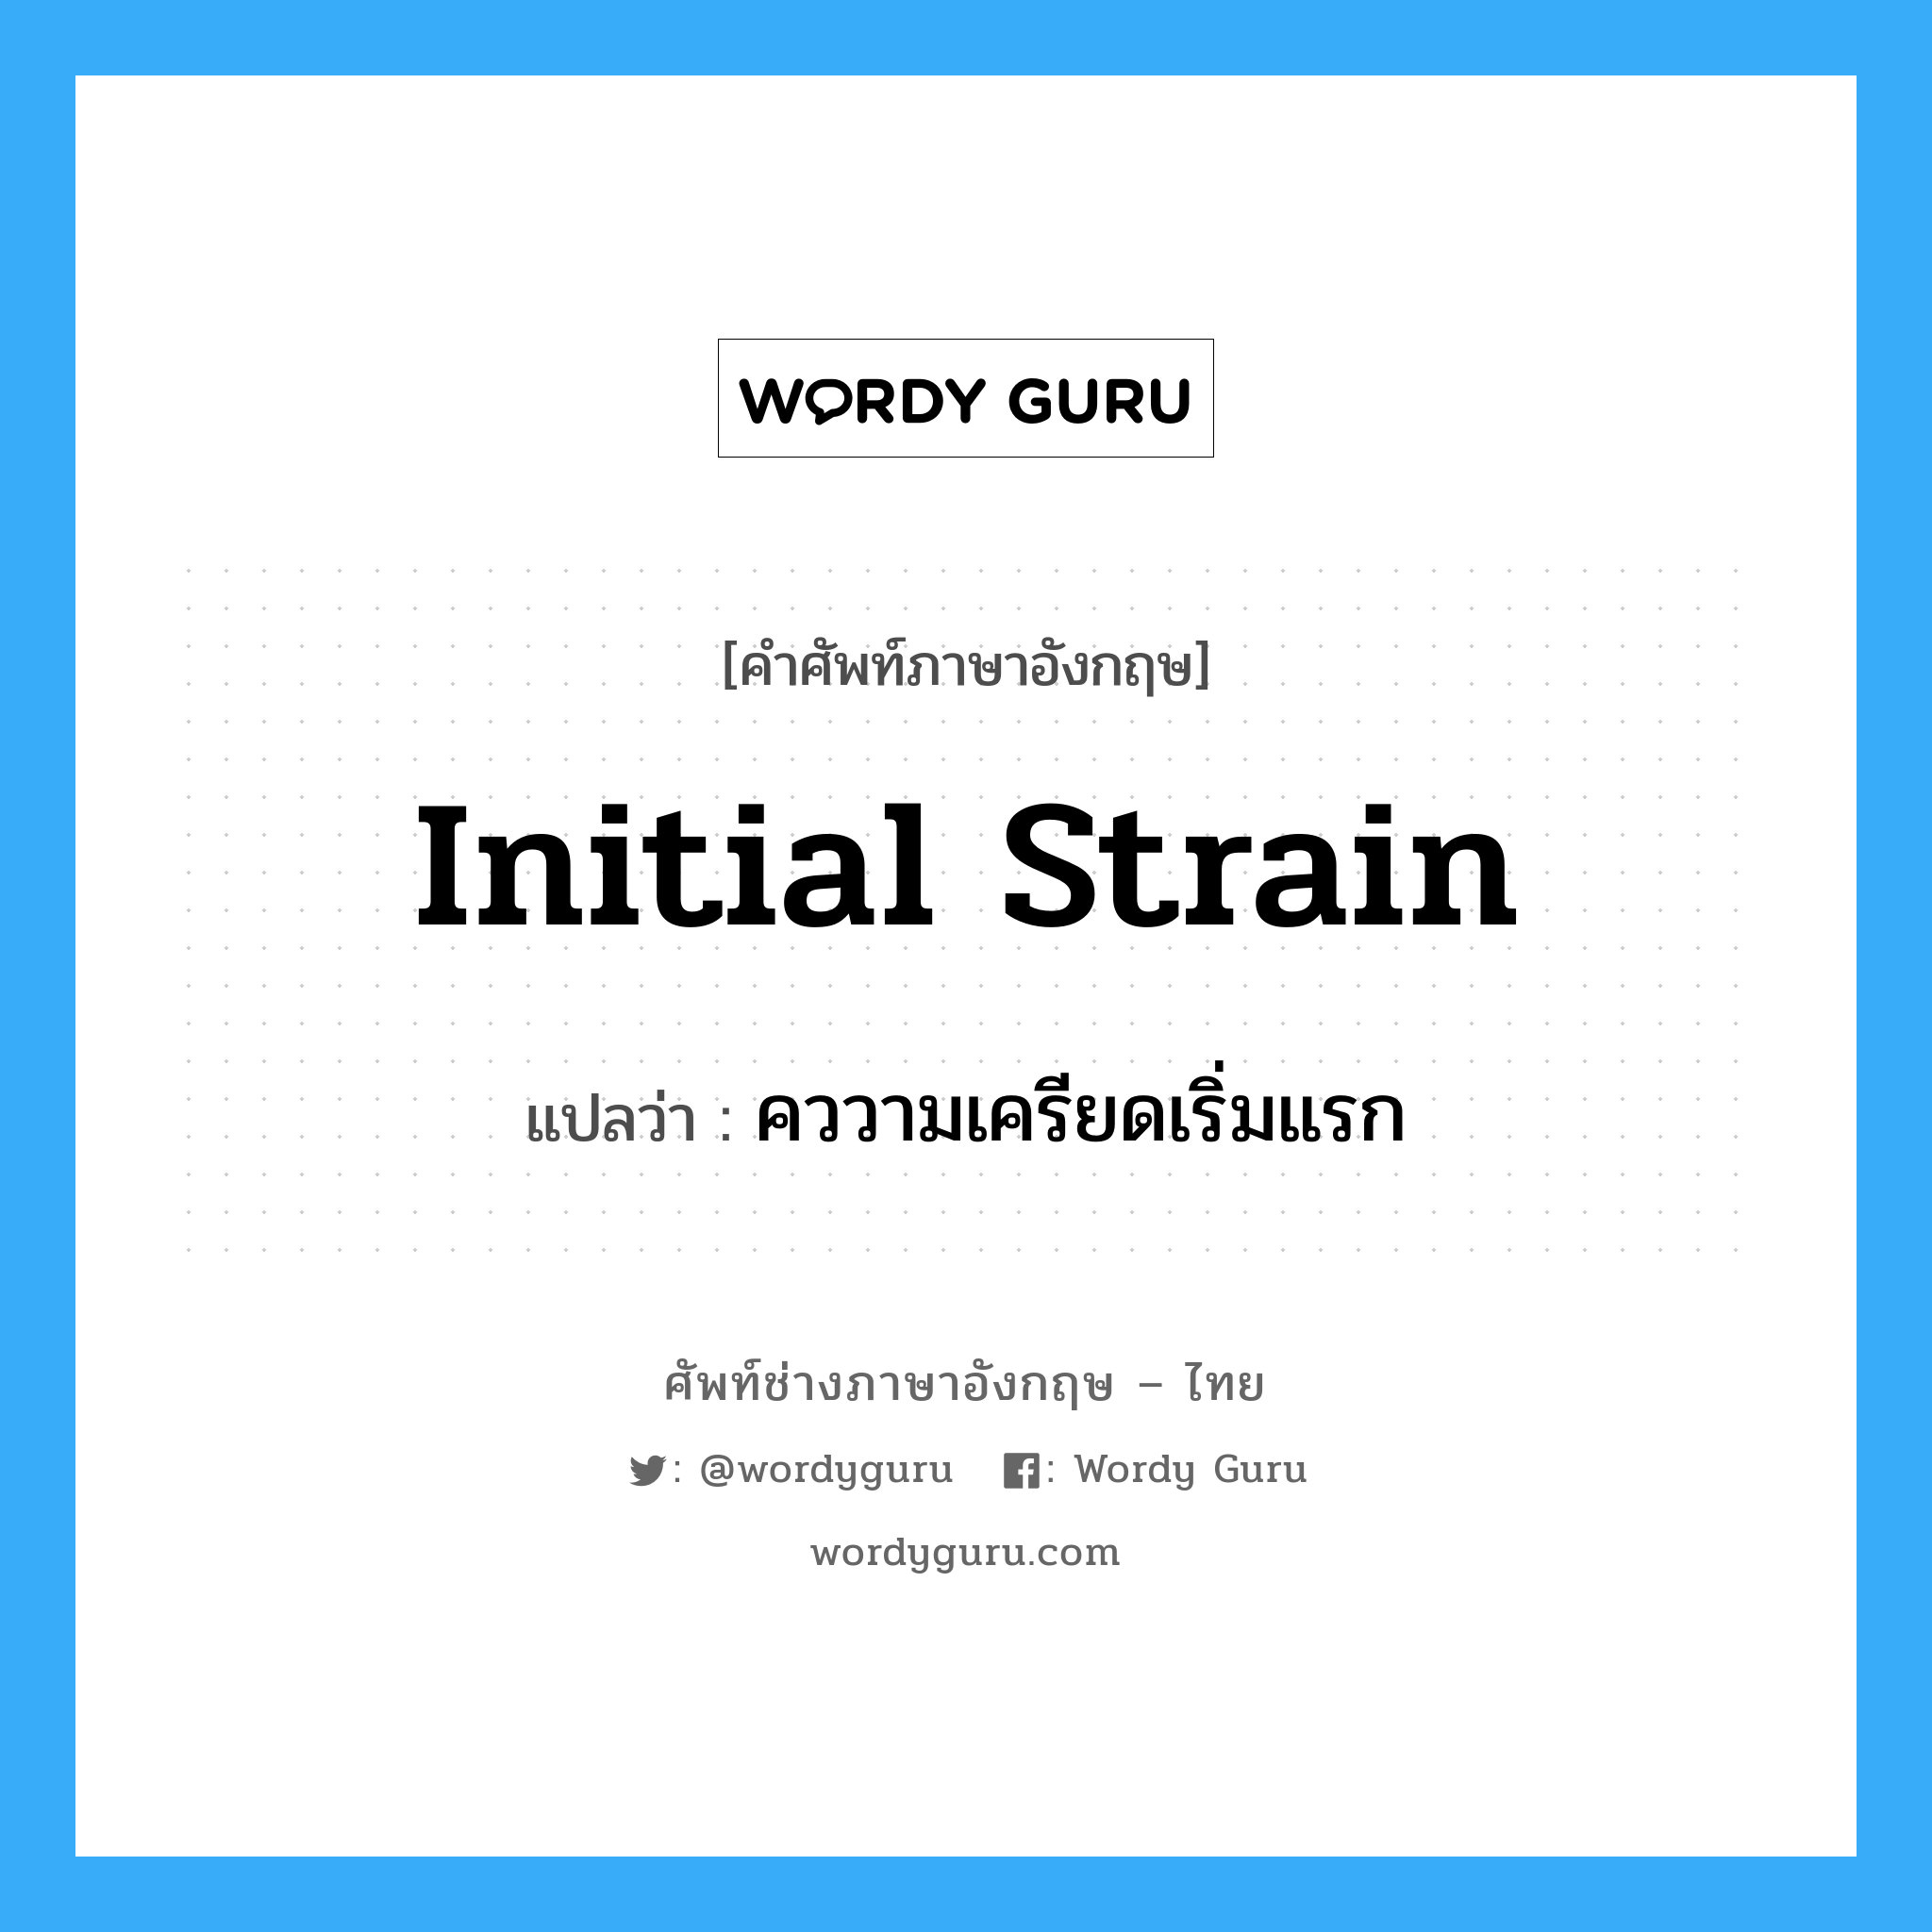 initial strain แปลว่า?, คำศัพท์ช่างภาษาอังกฤษ - ไทย initial strain คำศัพท์ภาษาอังกฤษ initial strain แปลว่า คววามเครียดเริ่มแรก